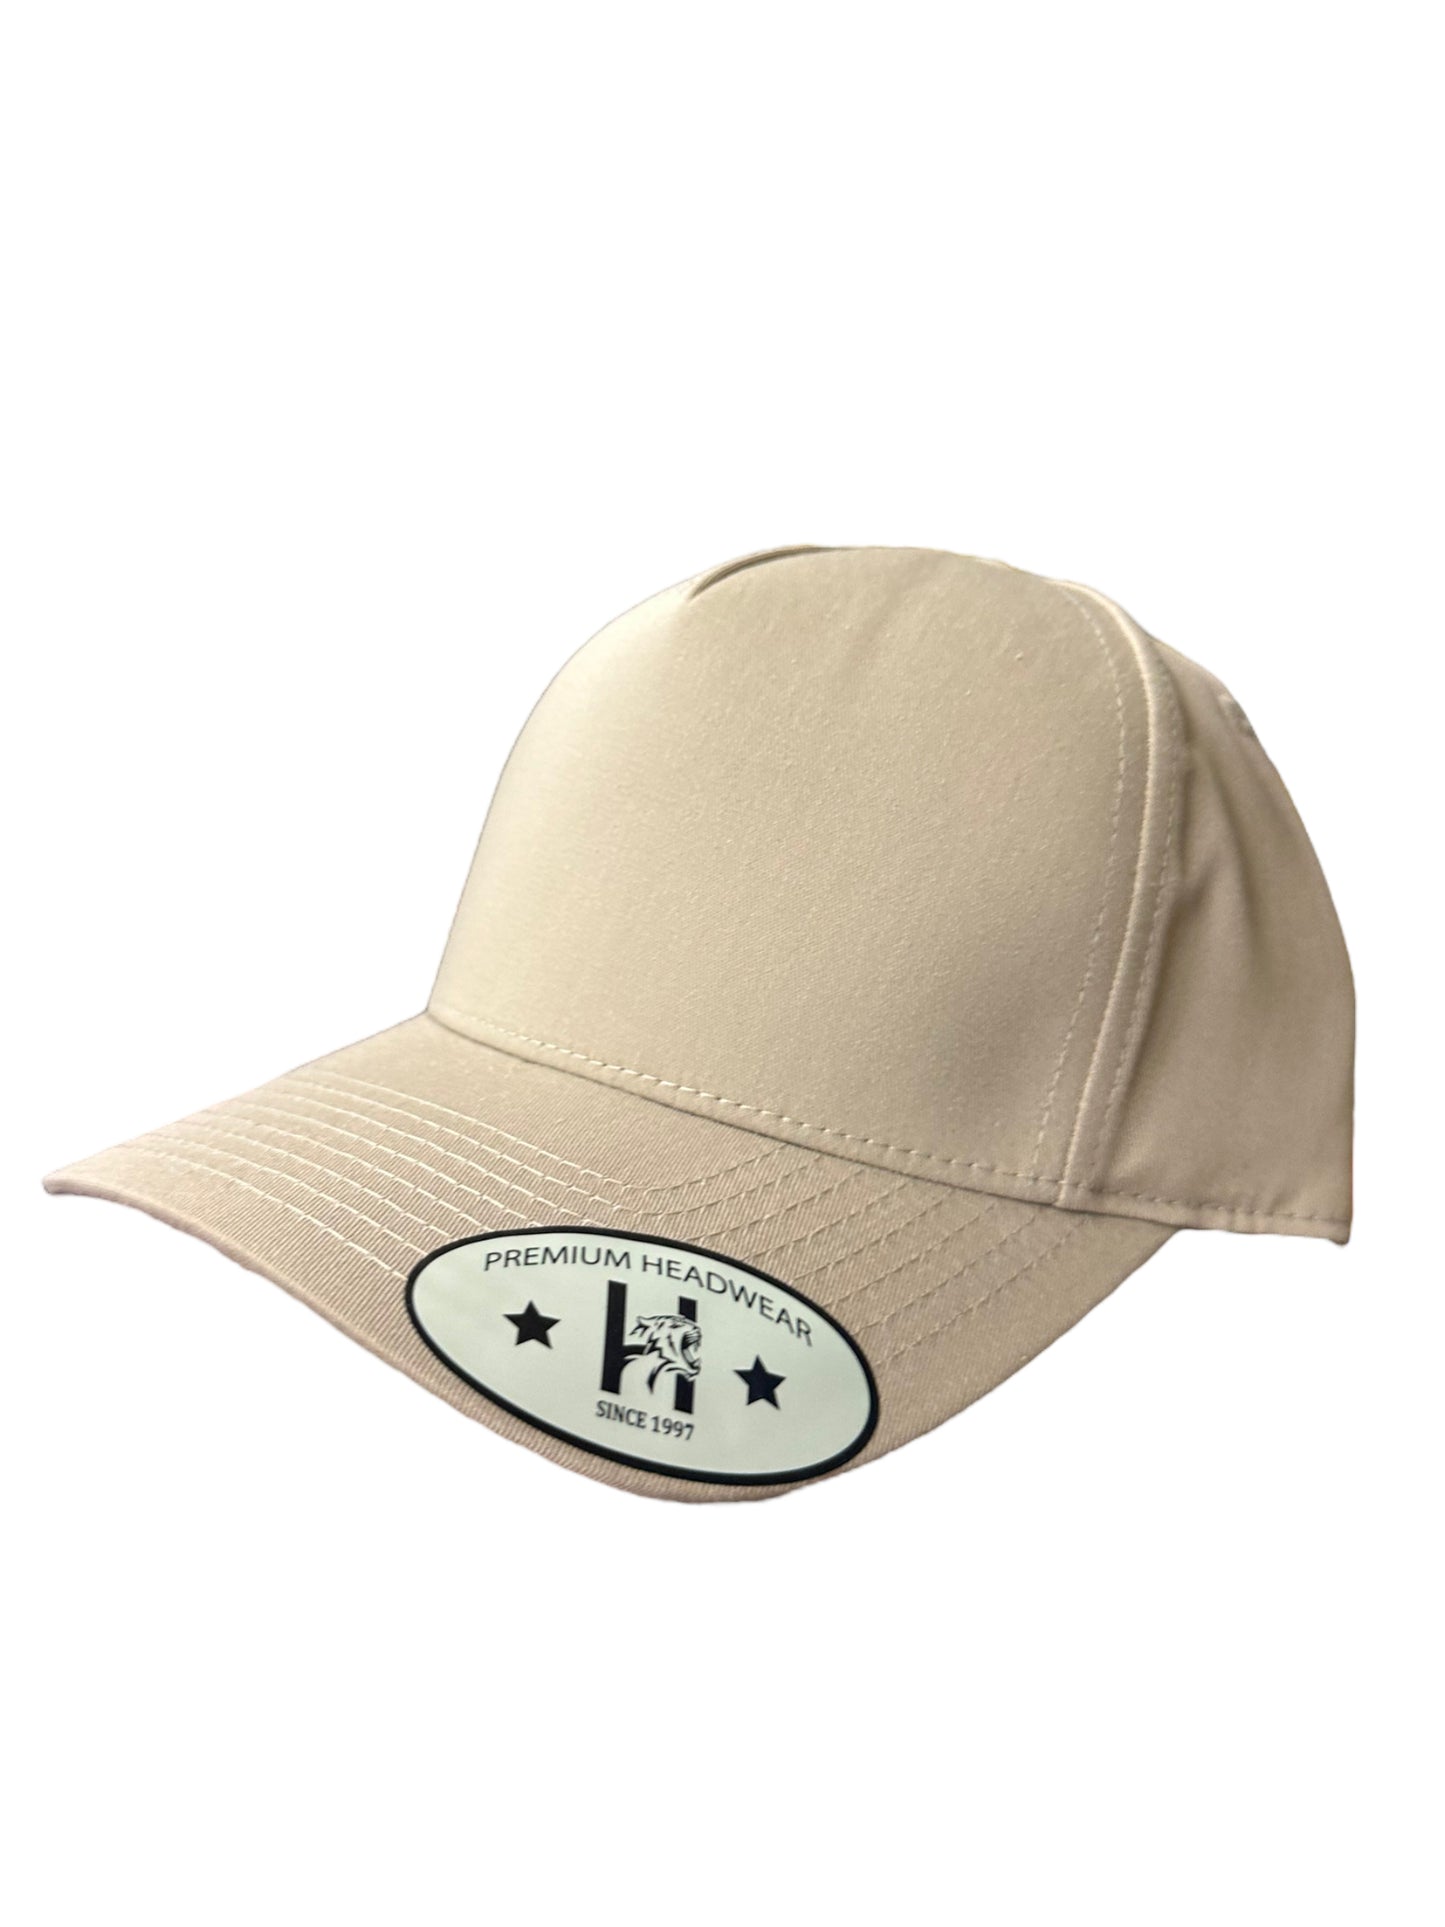 Beige solid a frame SnapBack hat